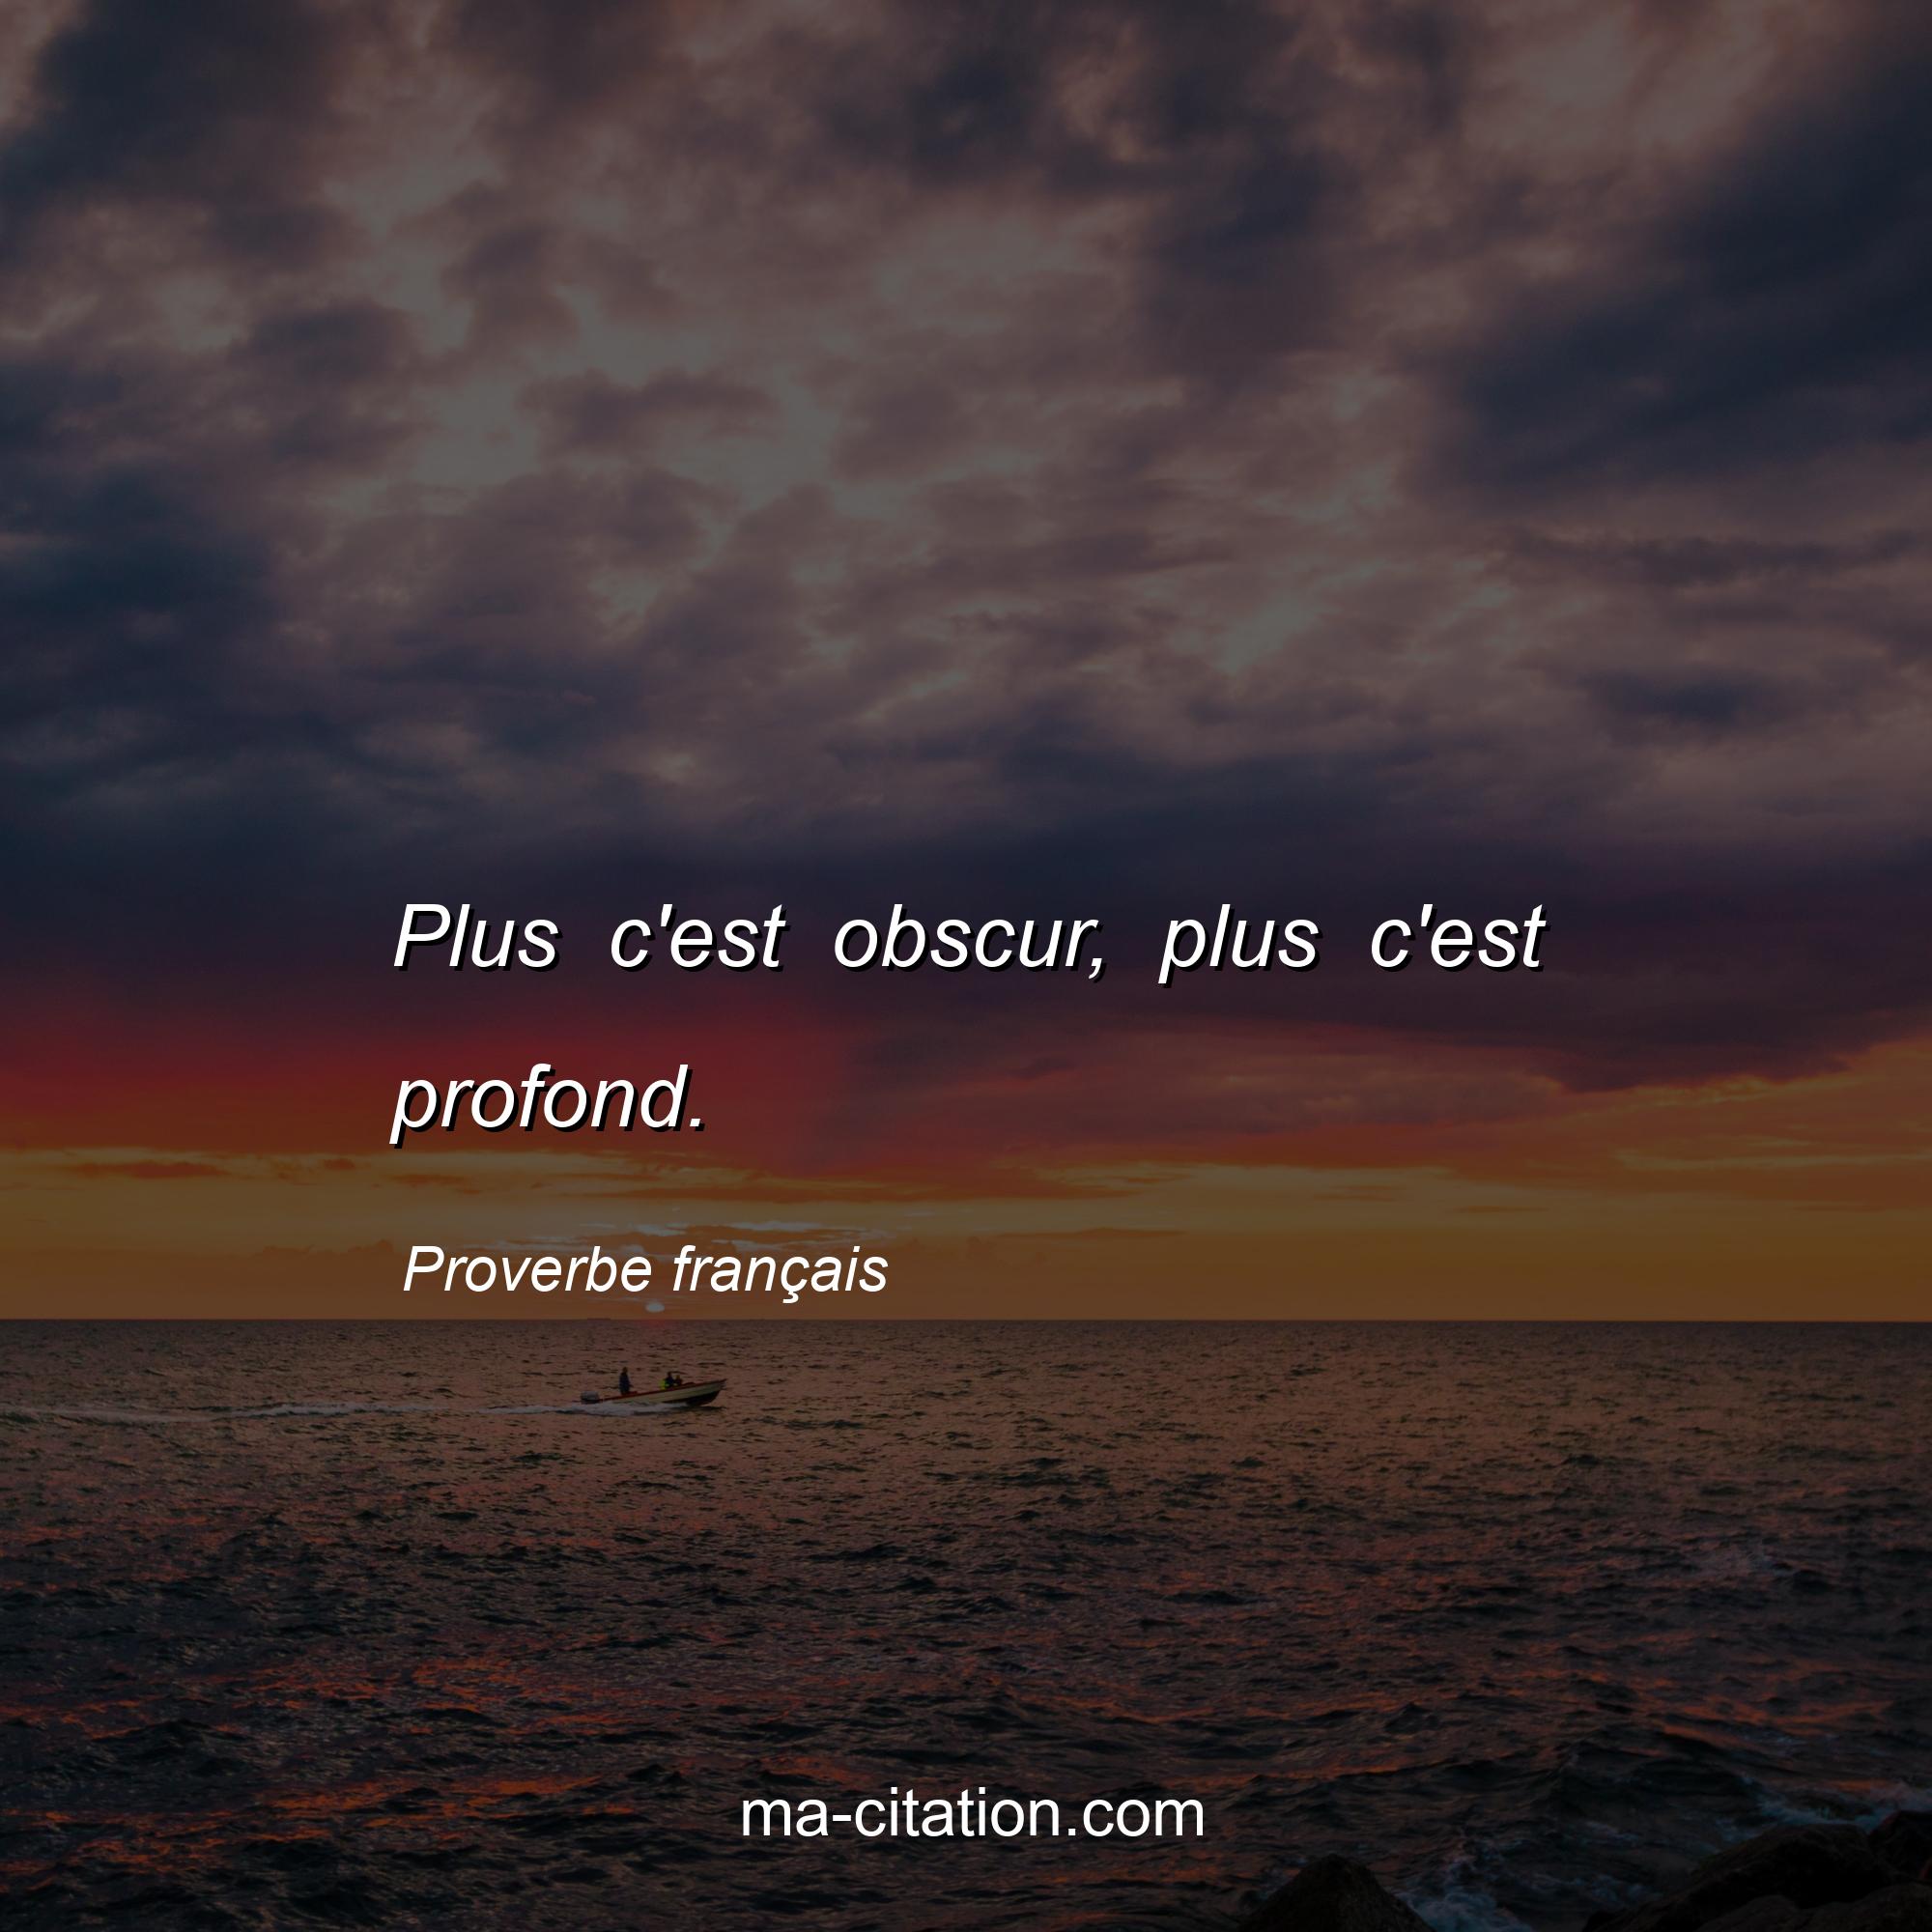 Proverbe français : Plus c'est obscur, plus c'est profond.